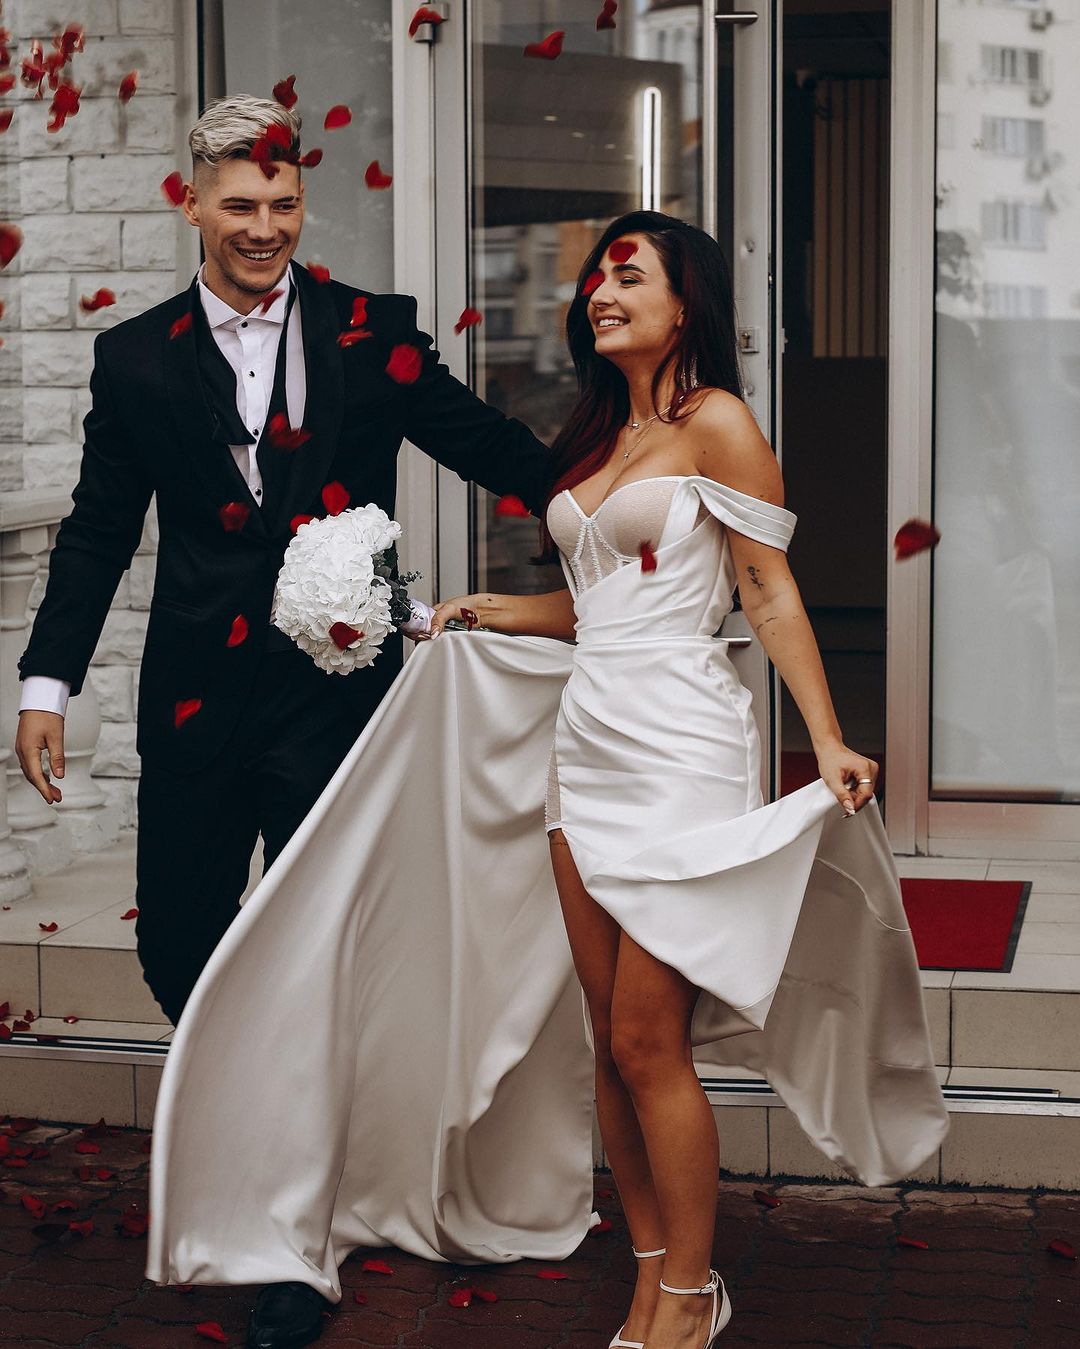 Анна Тринчер и Александр Волошин отметили первую годовщину свадьбы